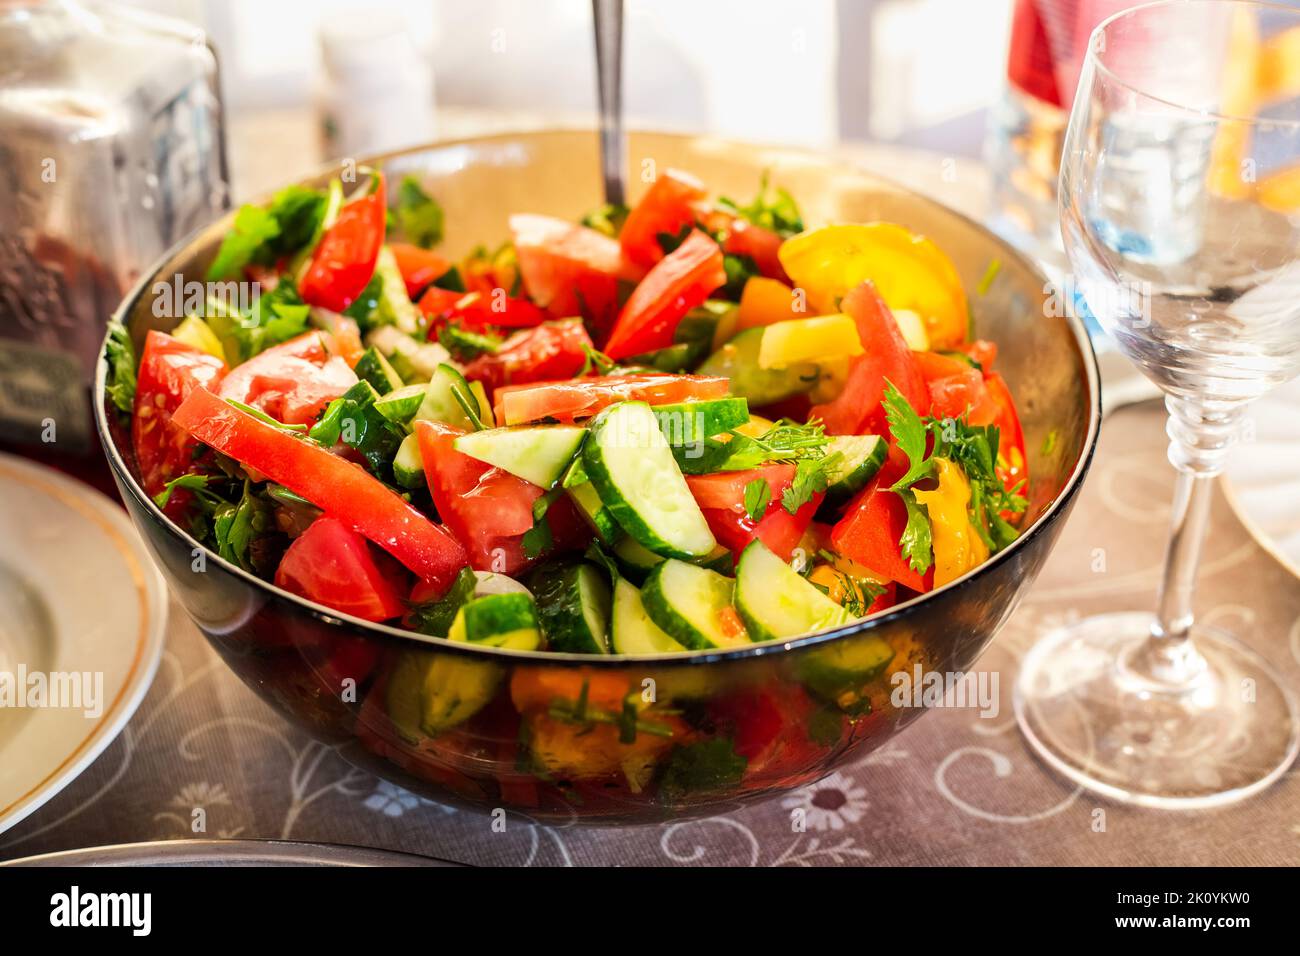 Plato con ensalada de pepinos frescos y tomates en la mesa festiva, enfoque selectivo. Comer en casa. Foto de stock